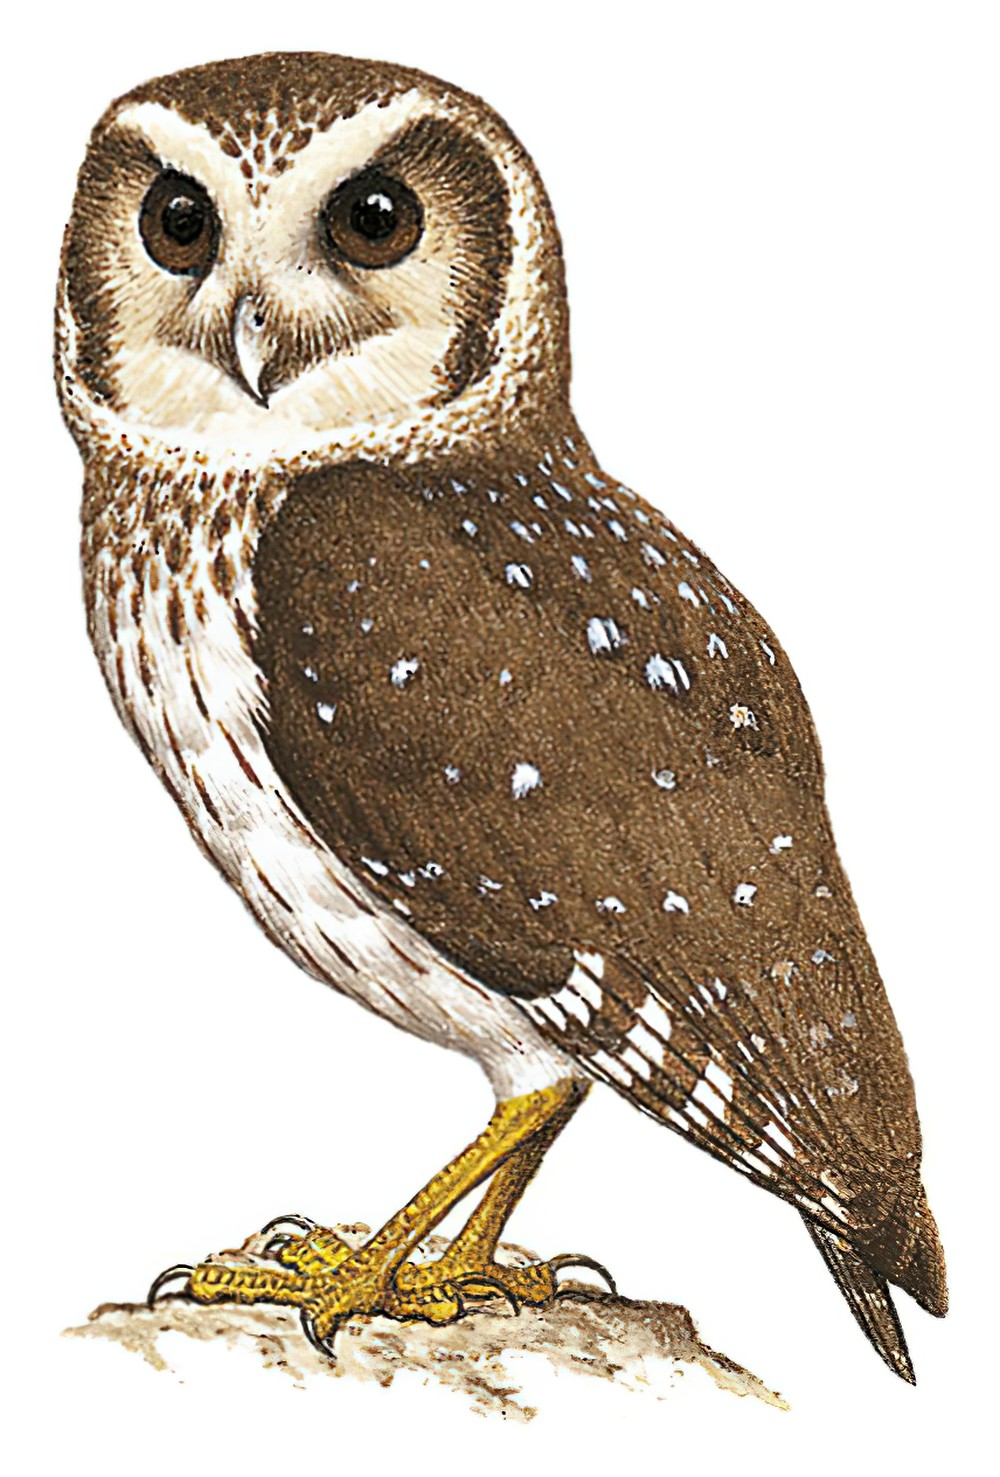 Bare-legged Owl / Margarobyas lawrencii